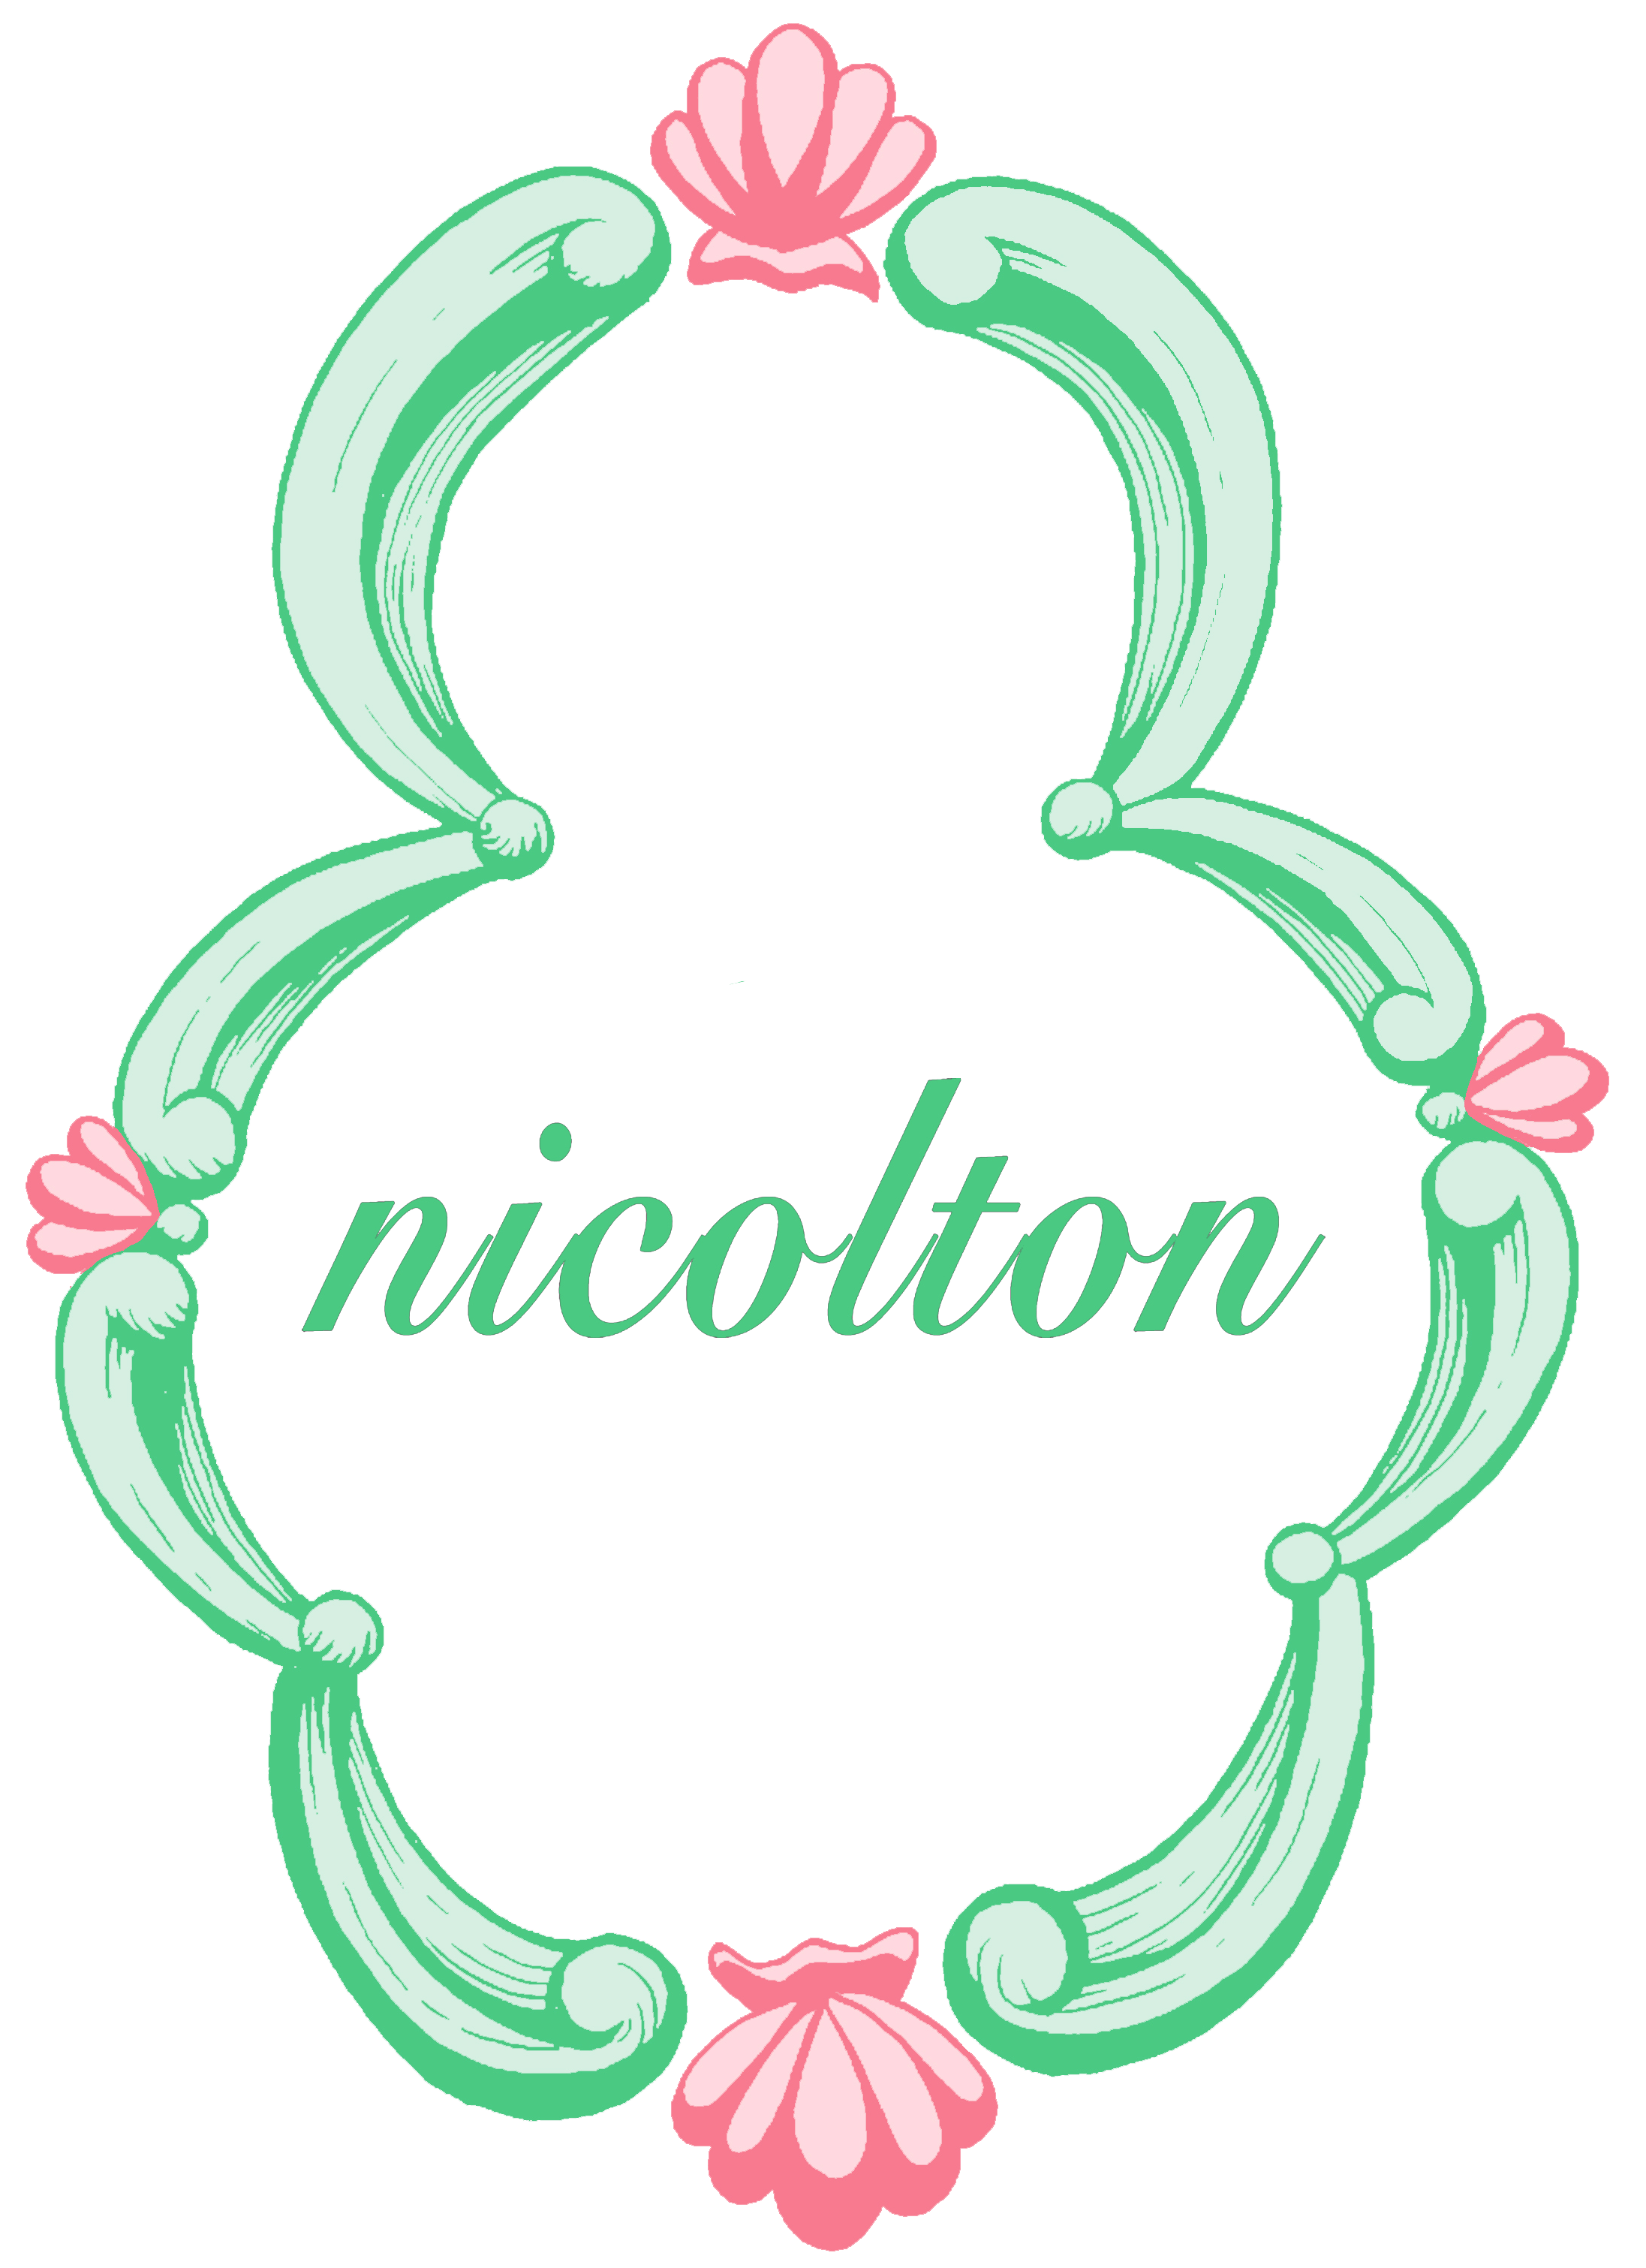 nicolton